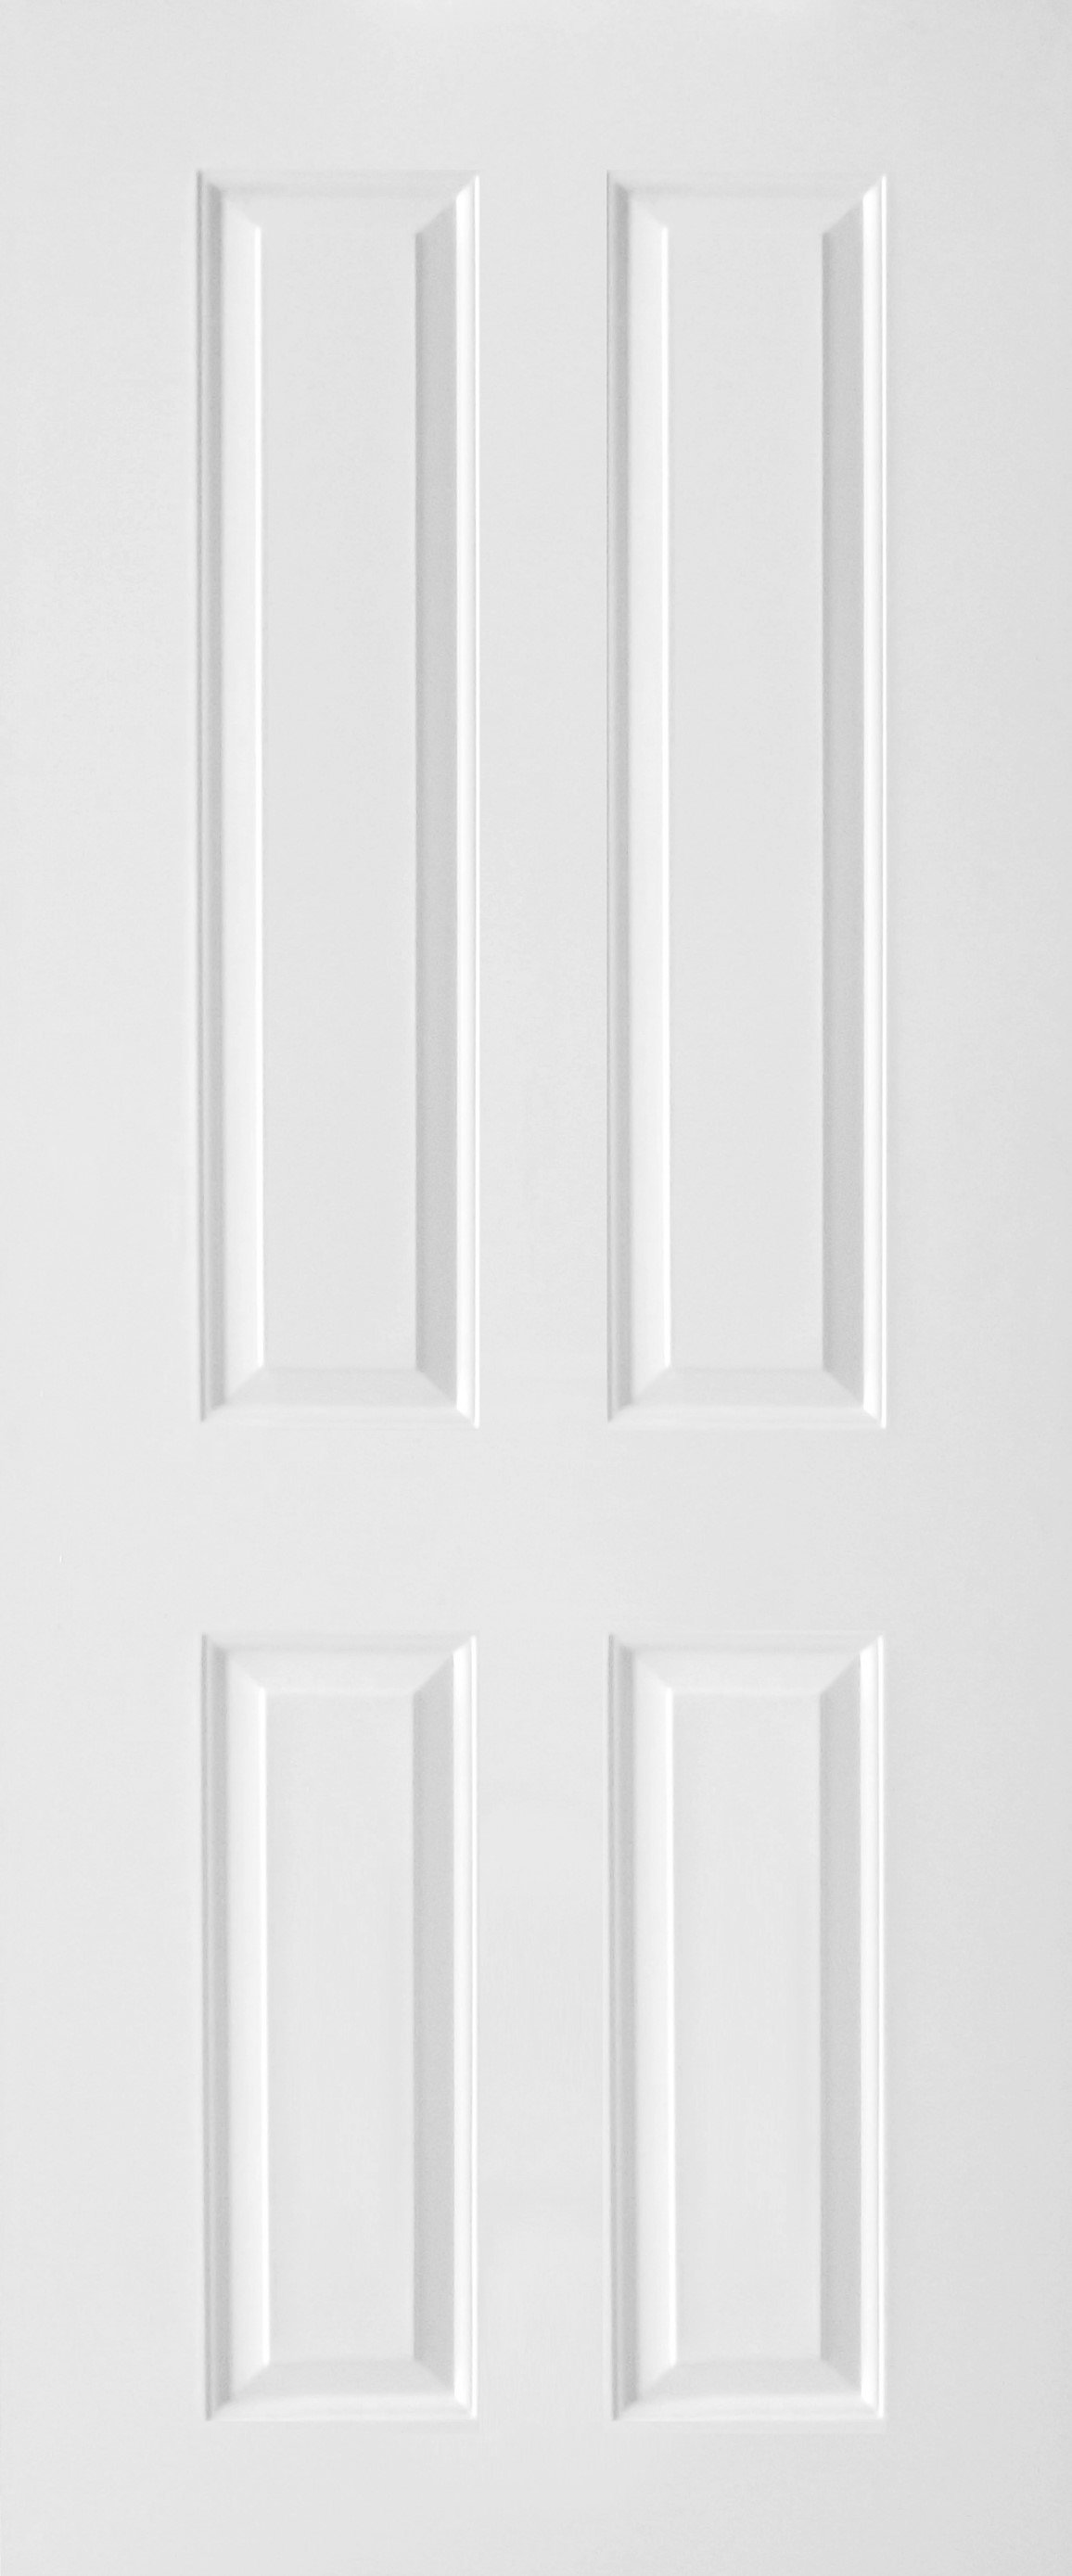 ประตูUPVC ผิวหน้าลายไม้ สีขาว บานลูกฟัก 4 ช่องตรง